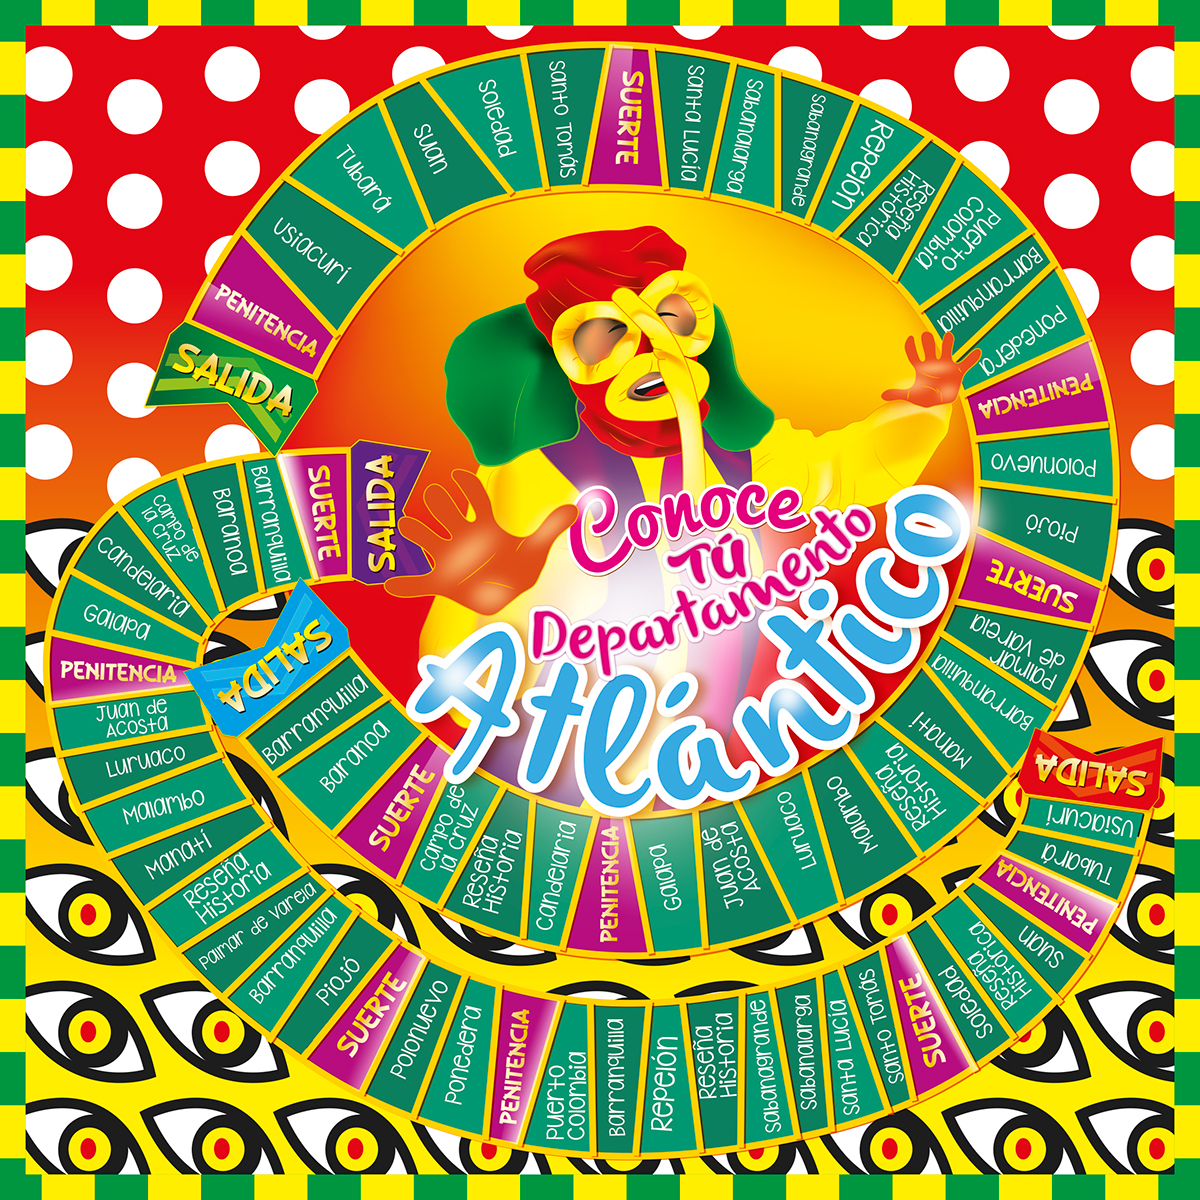 atlantico Carnaval barranquilla Departamento cultura folclor juego Didactico identidad corporativa ilustracion marimonda Puloy negrita